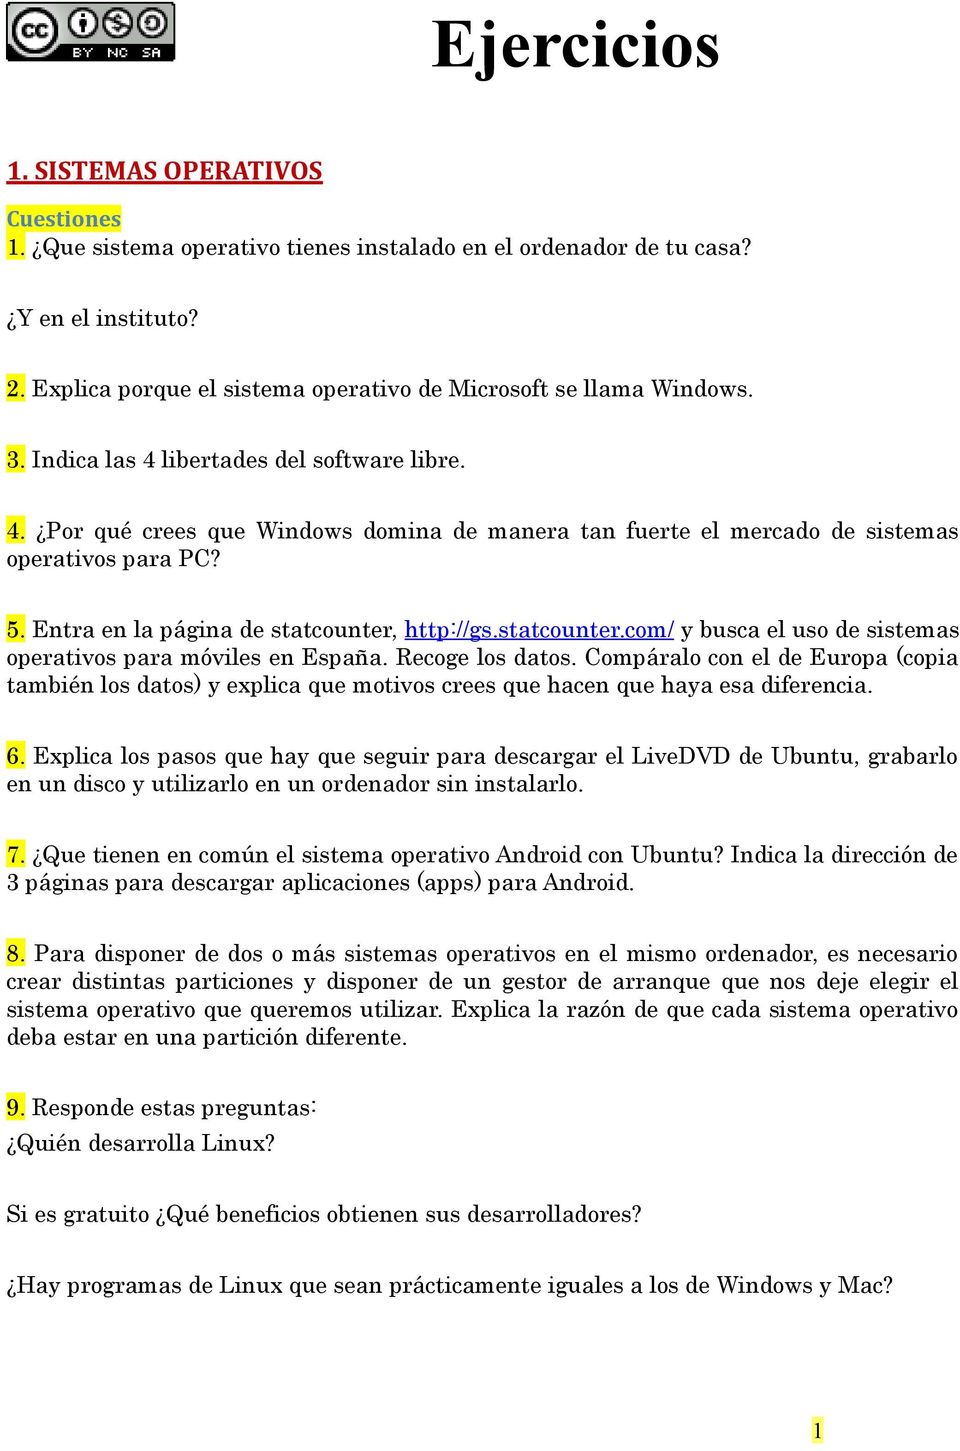 5. Entra en la página de statcounter, http://gs.statcounter.com/ y busca el uso de sistemas operativos para móviles en España. Recoge los datos.